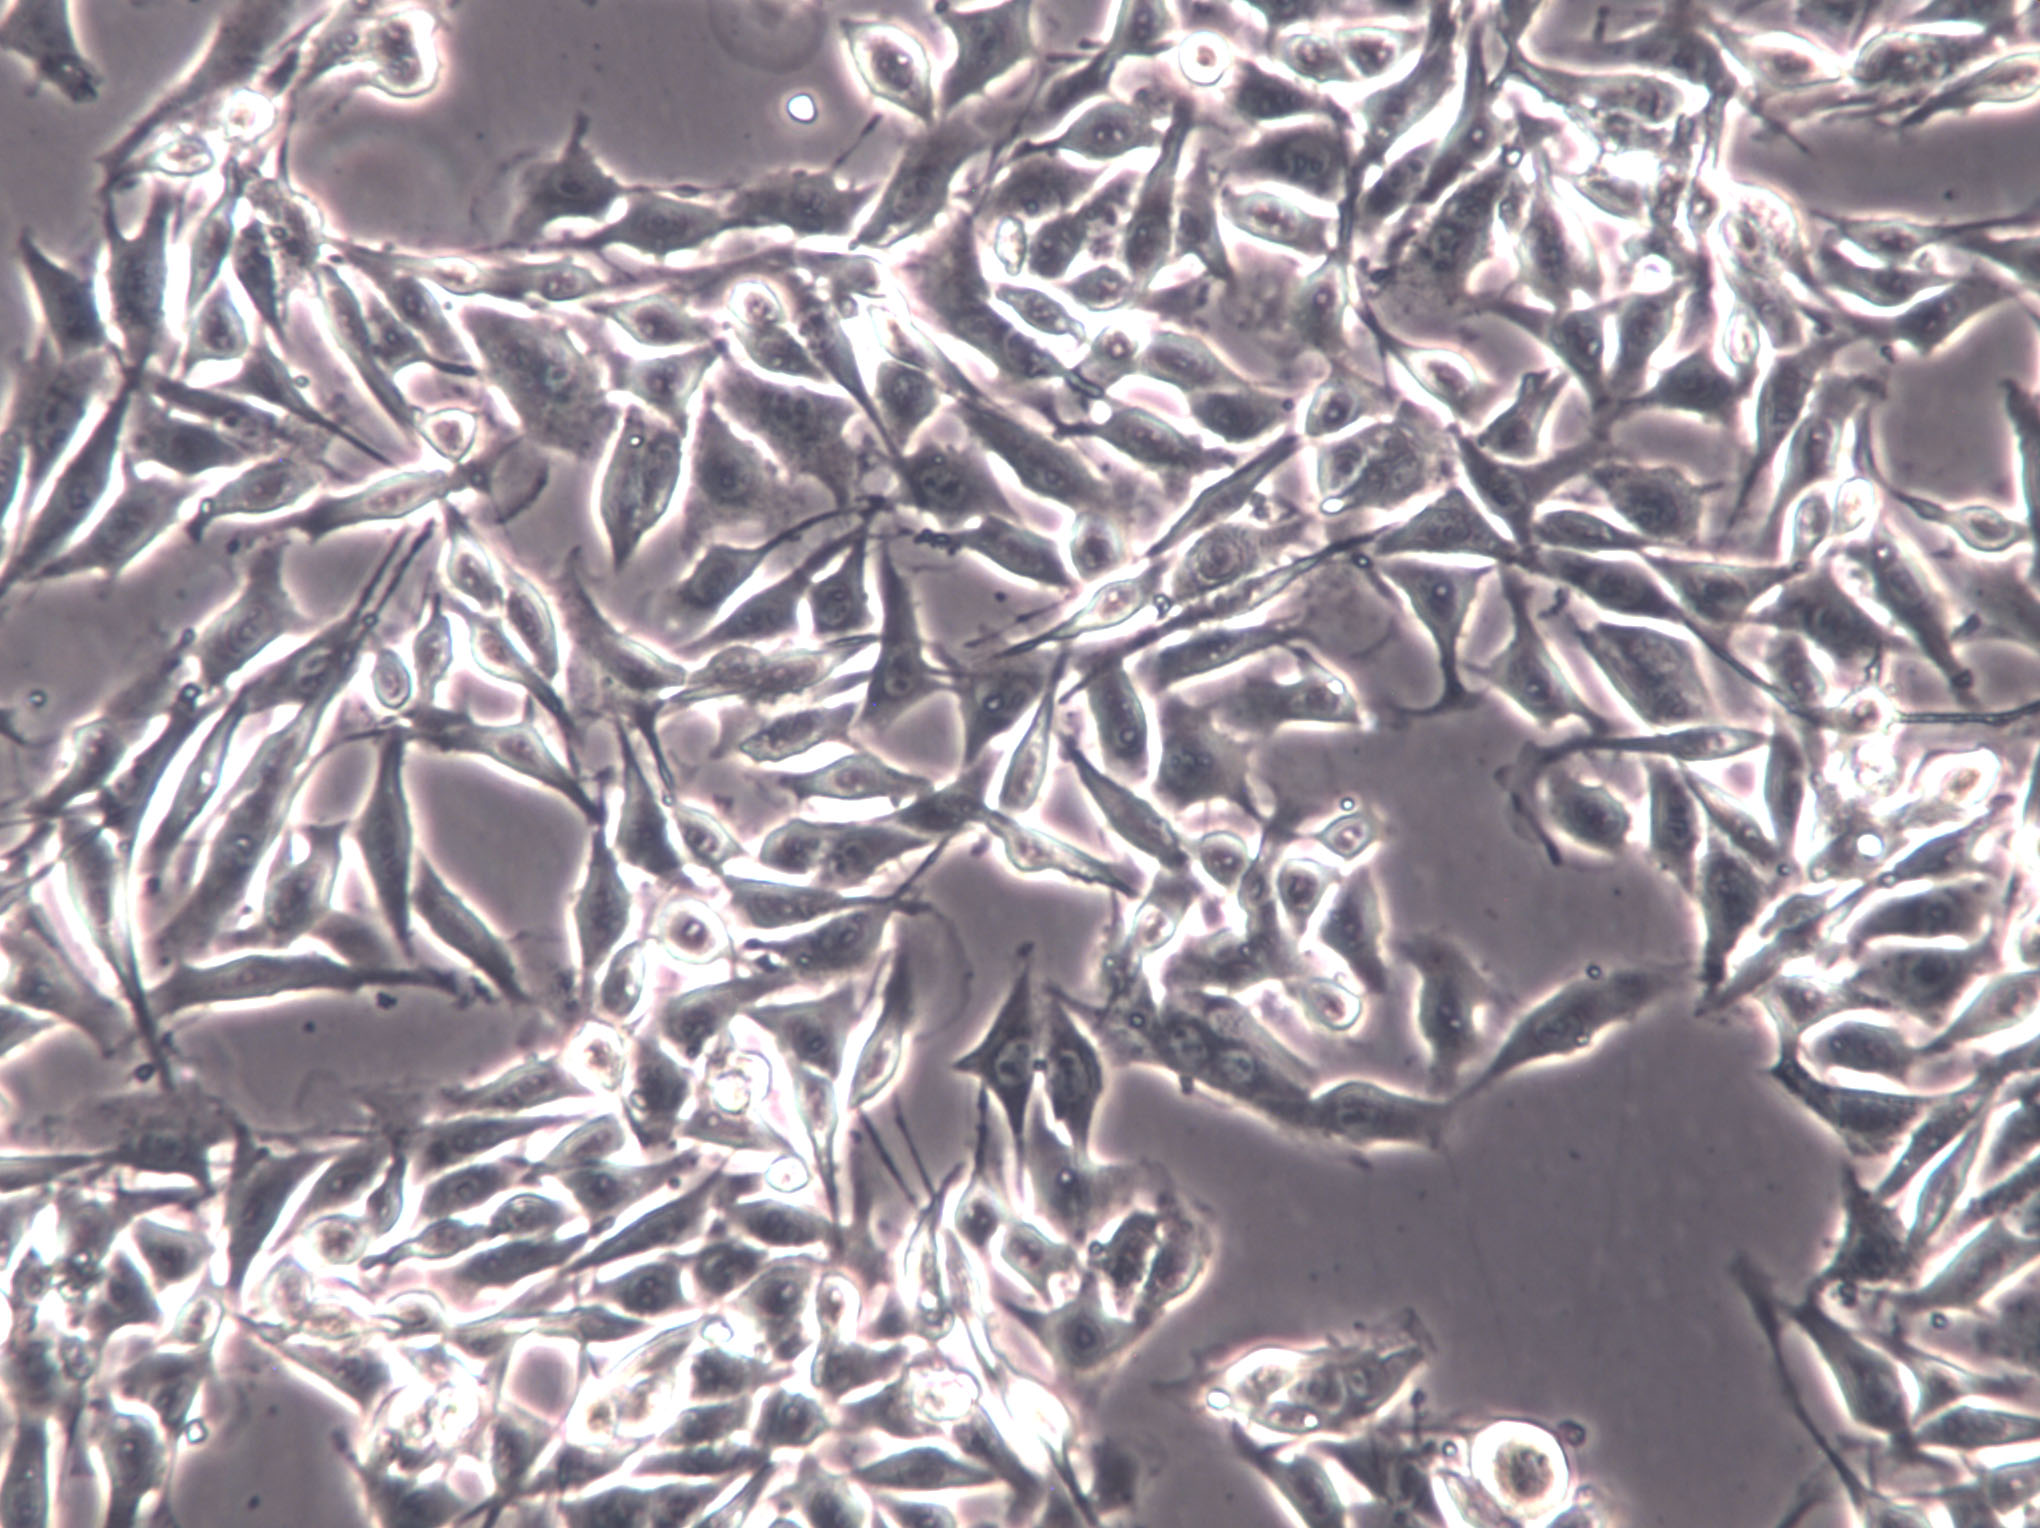 HLF Cell|人肺成纤维样细胞,HLF Cell